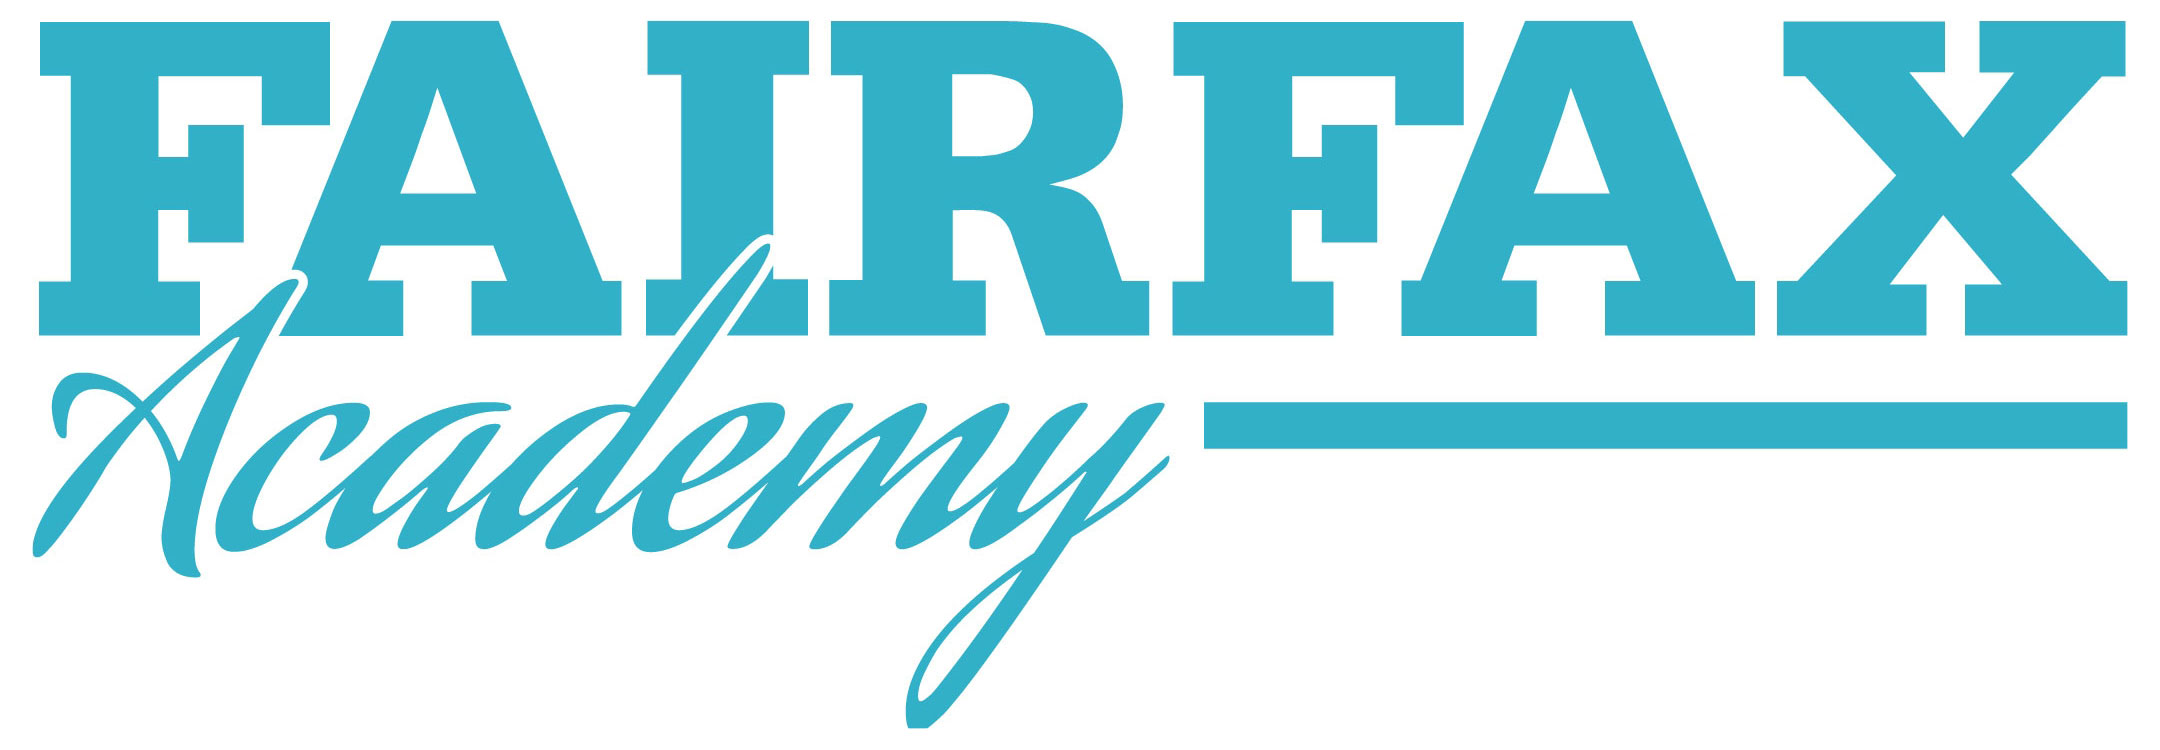 Fairfax Academy logo